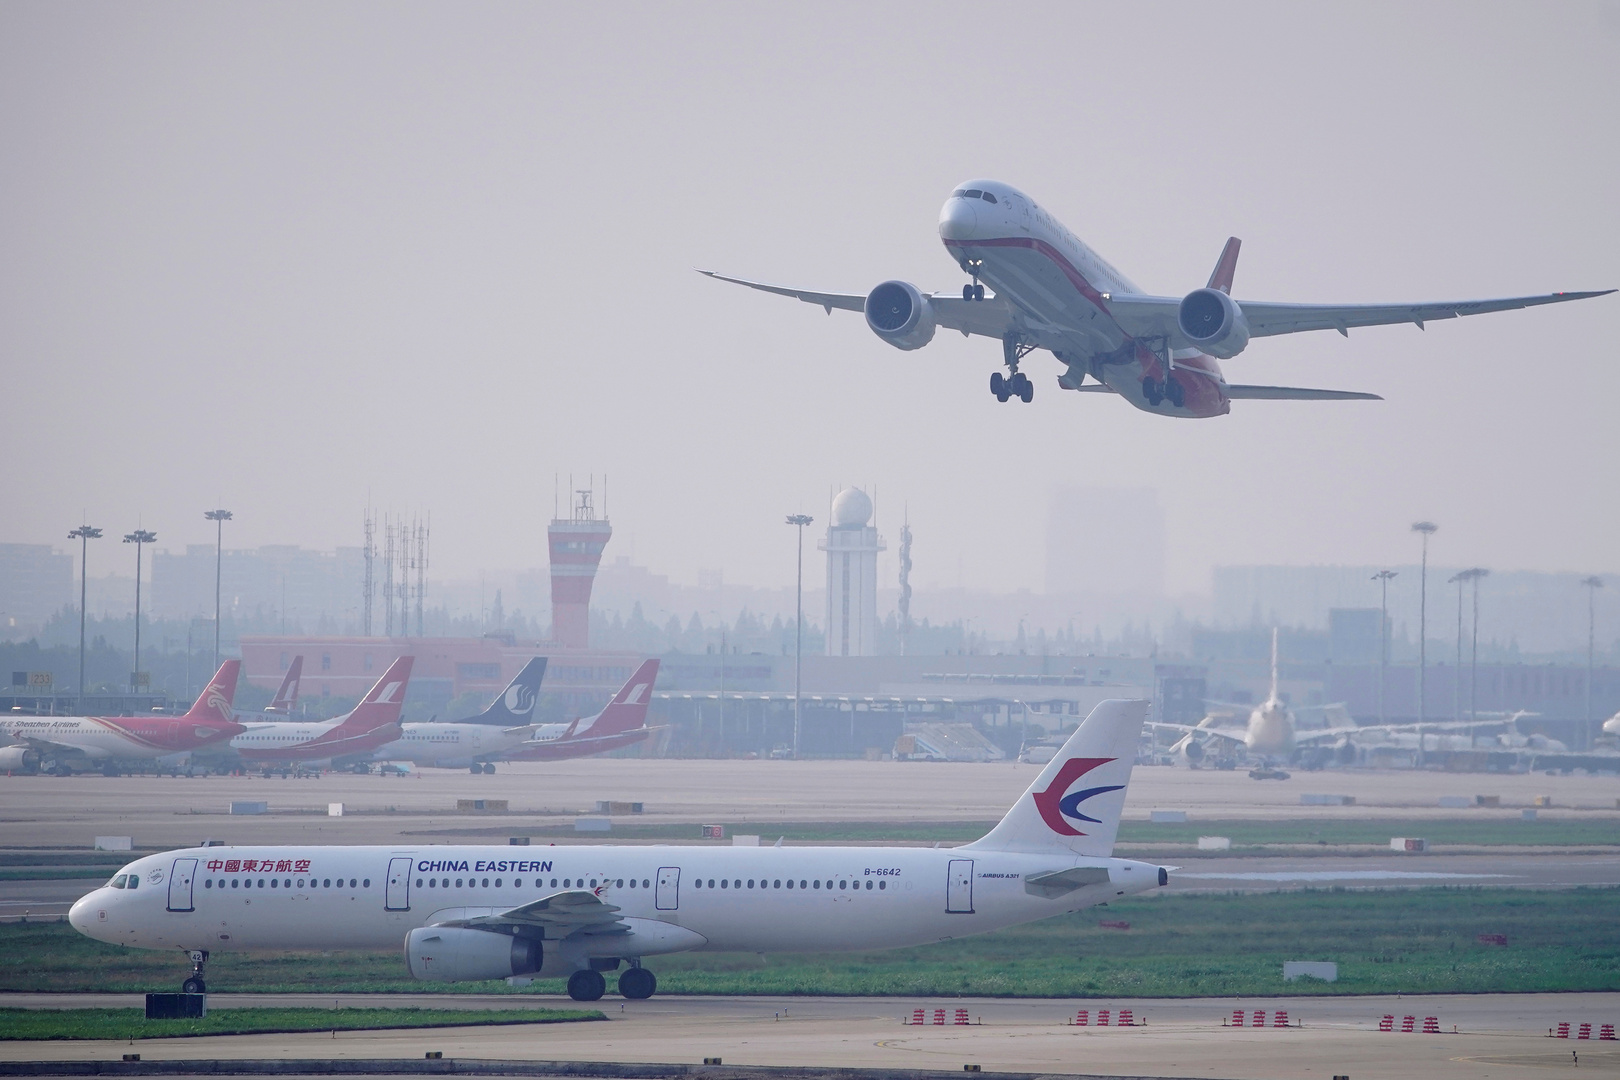 الاجراءات الوقائية في مطار شنغهاي تجبر طائرة قادمة من سياتل على العودة